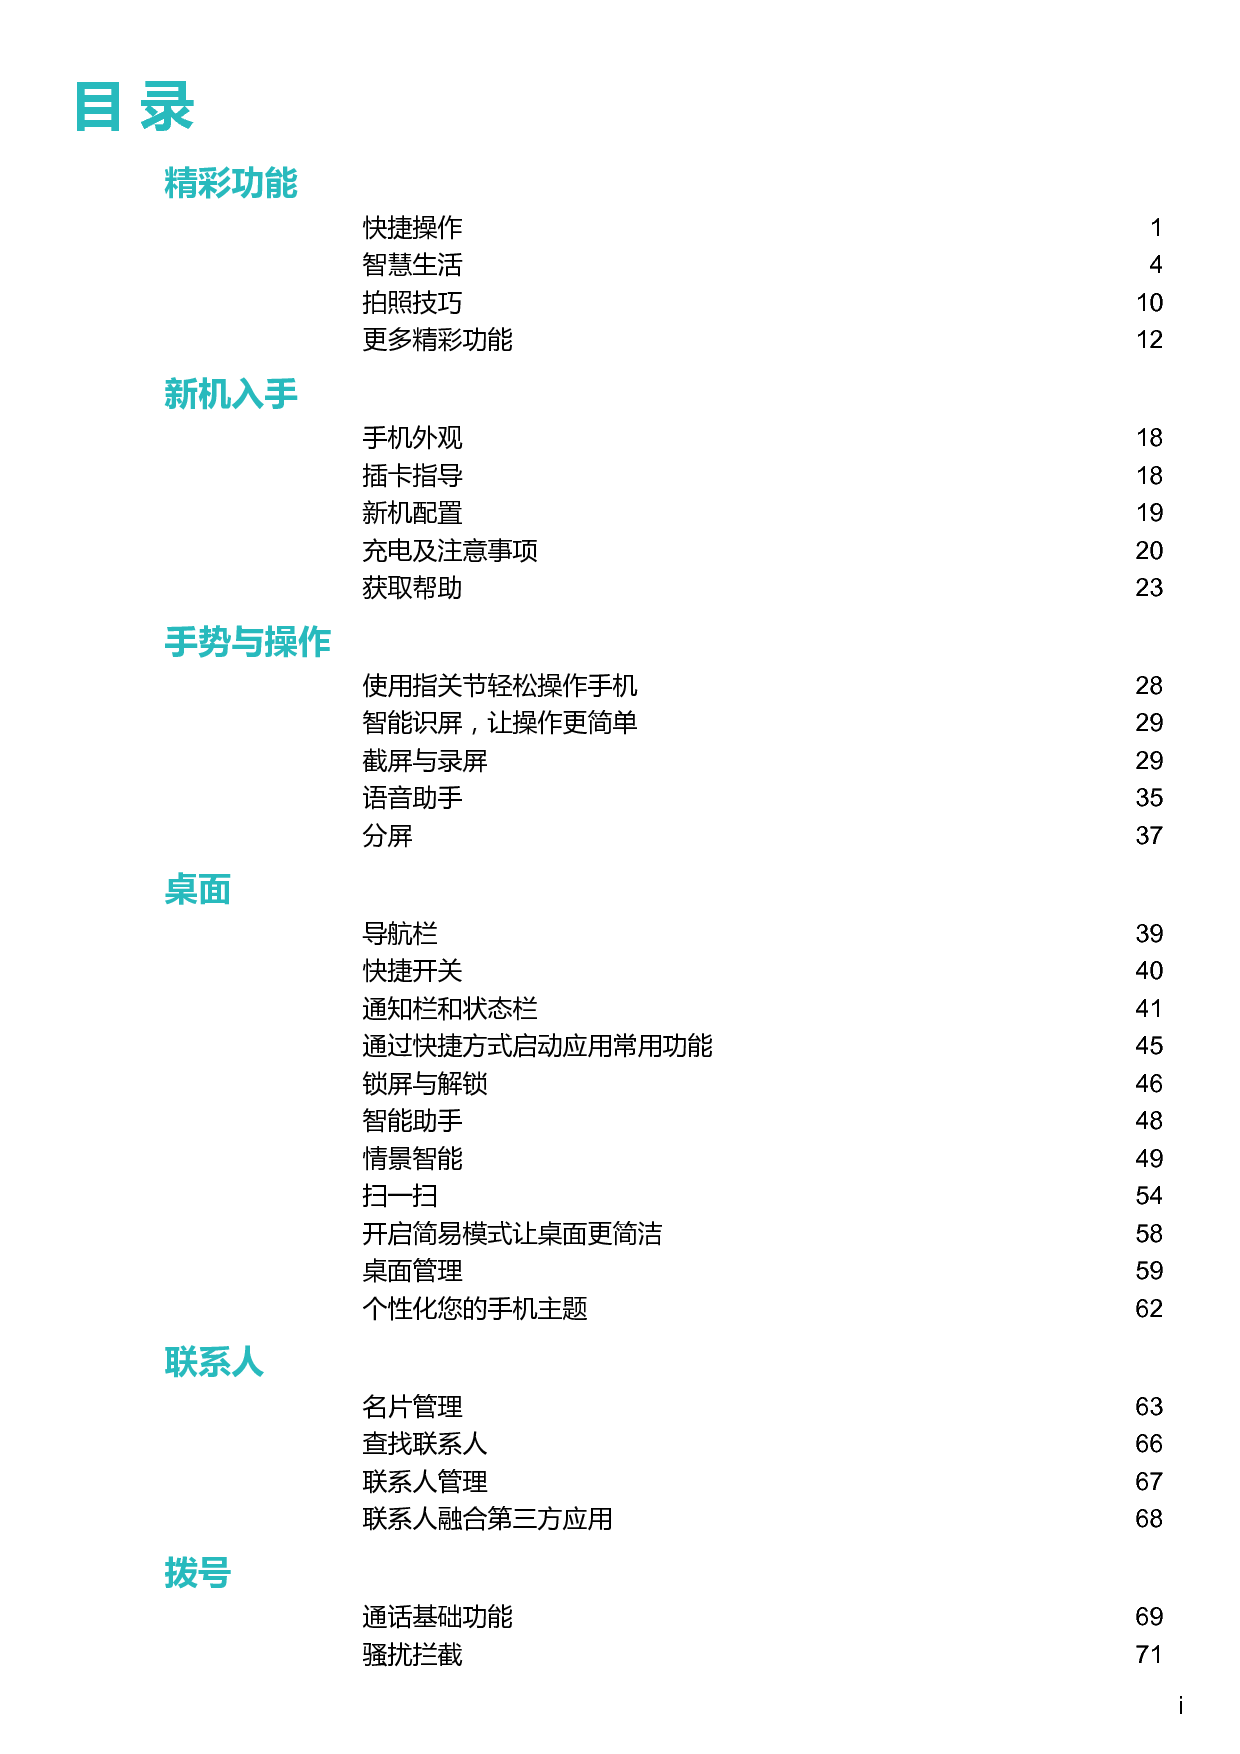 华为 Huawei Mate 10 Pro BLA-AL00,BLA-TL00 用户指南 第1页